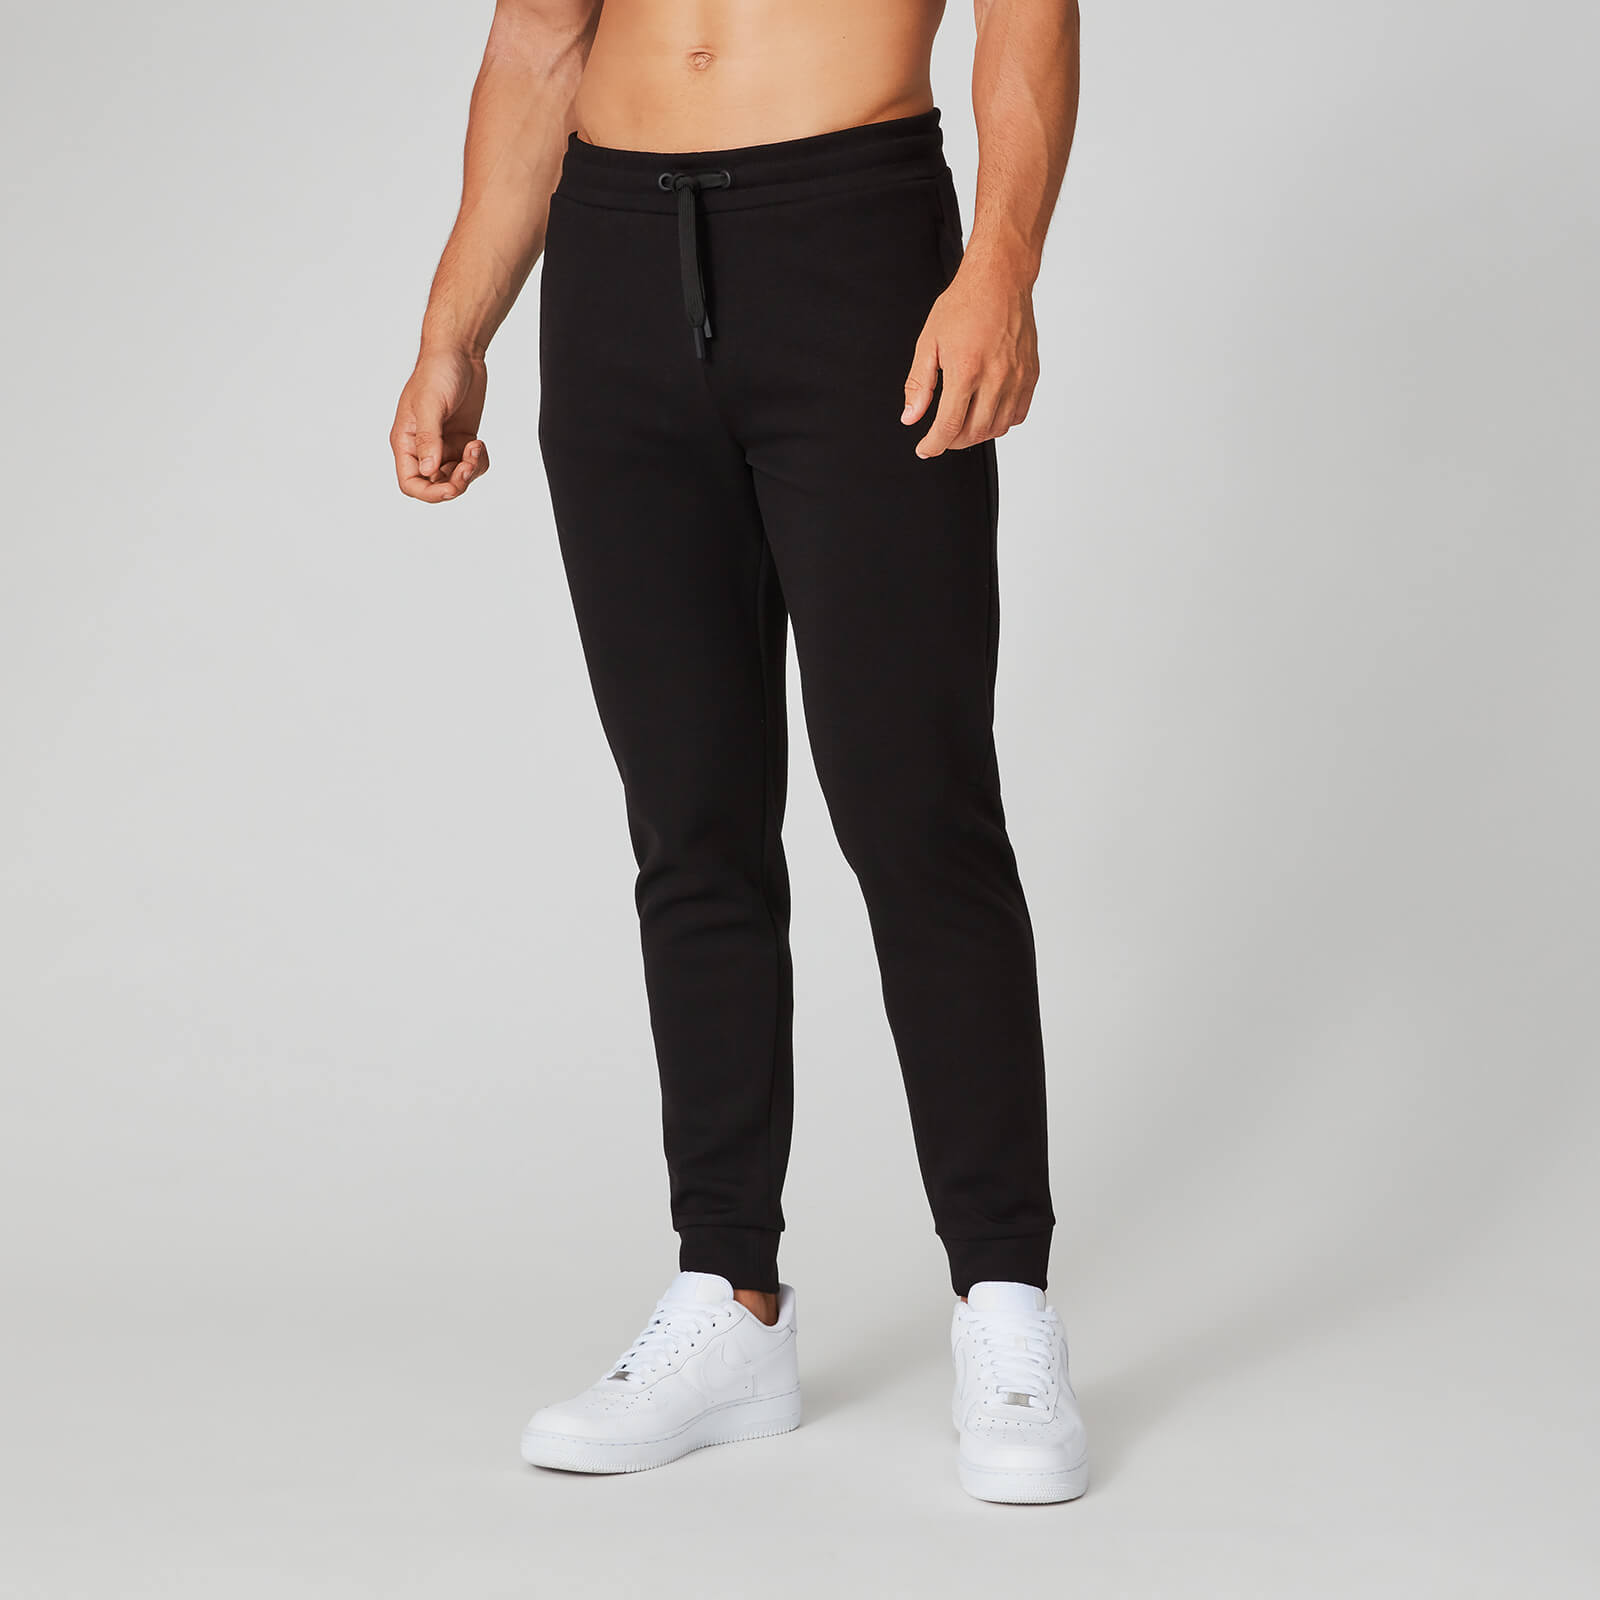 Pantalon de jogging Form Pro - Noir - S